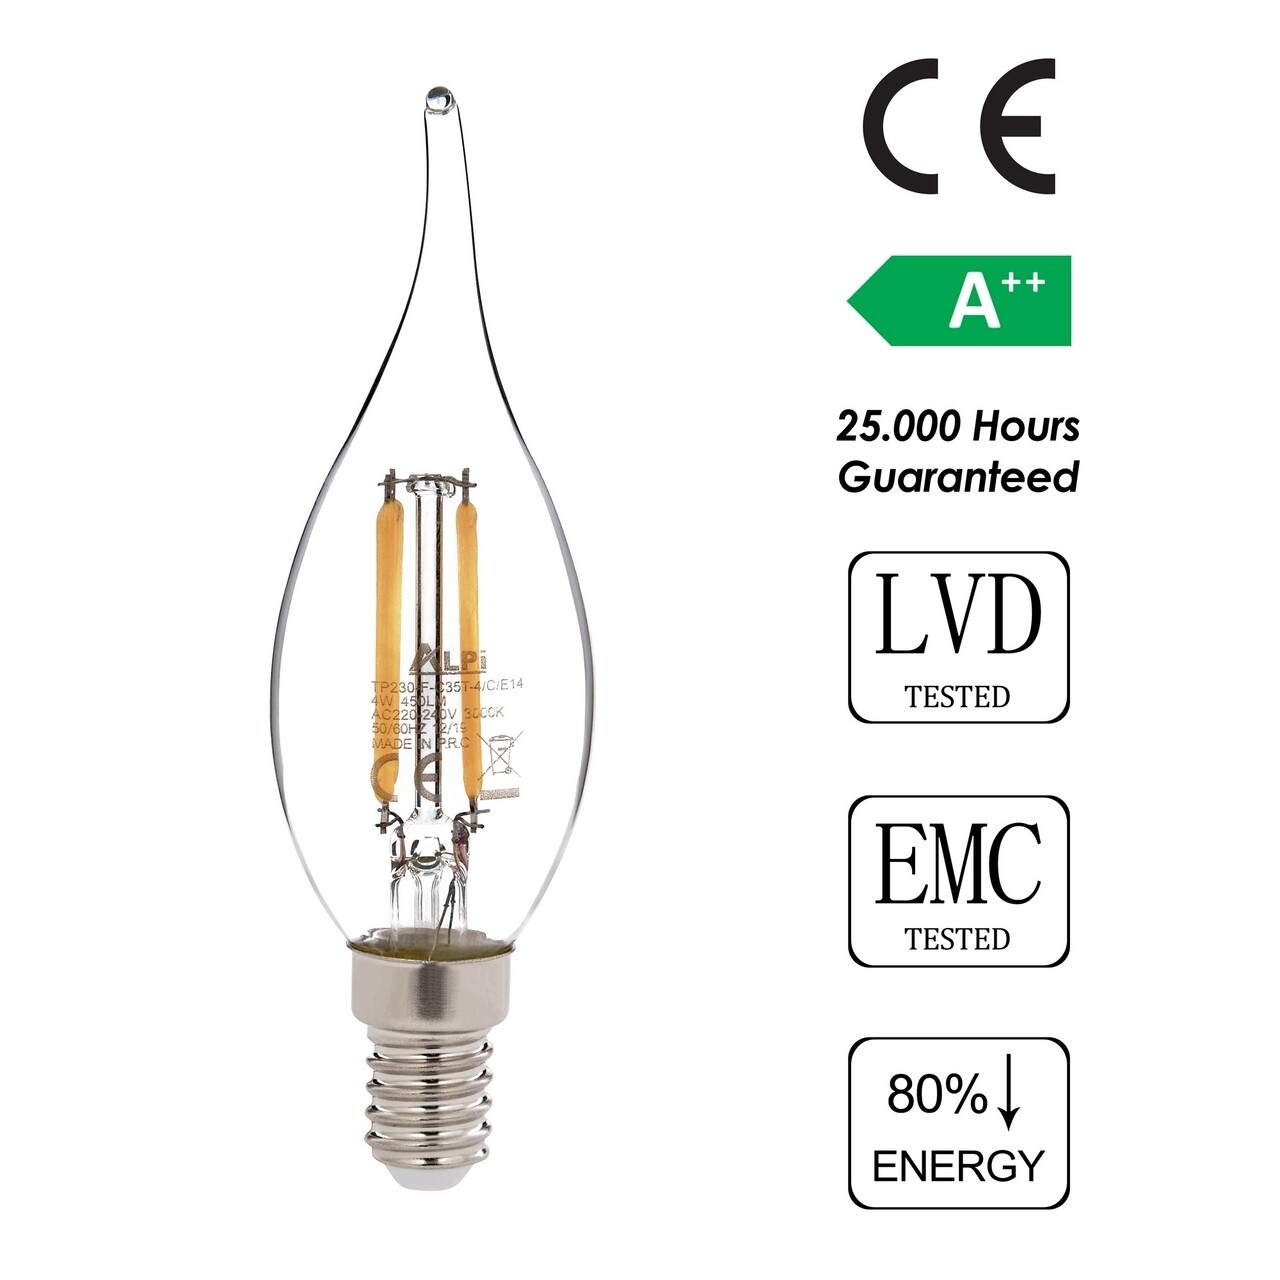 LED Izzó, Sage, E14 Kıvrık Gün Işığı, E14, 4 W, 3000K, 450 Lm, üveg